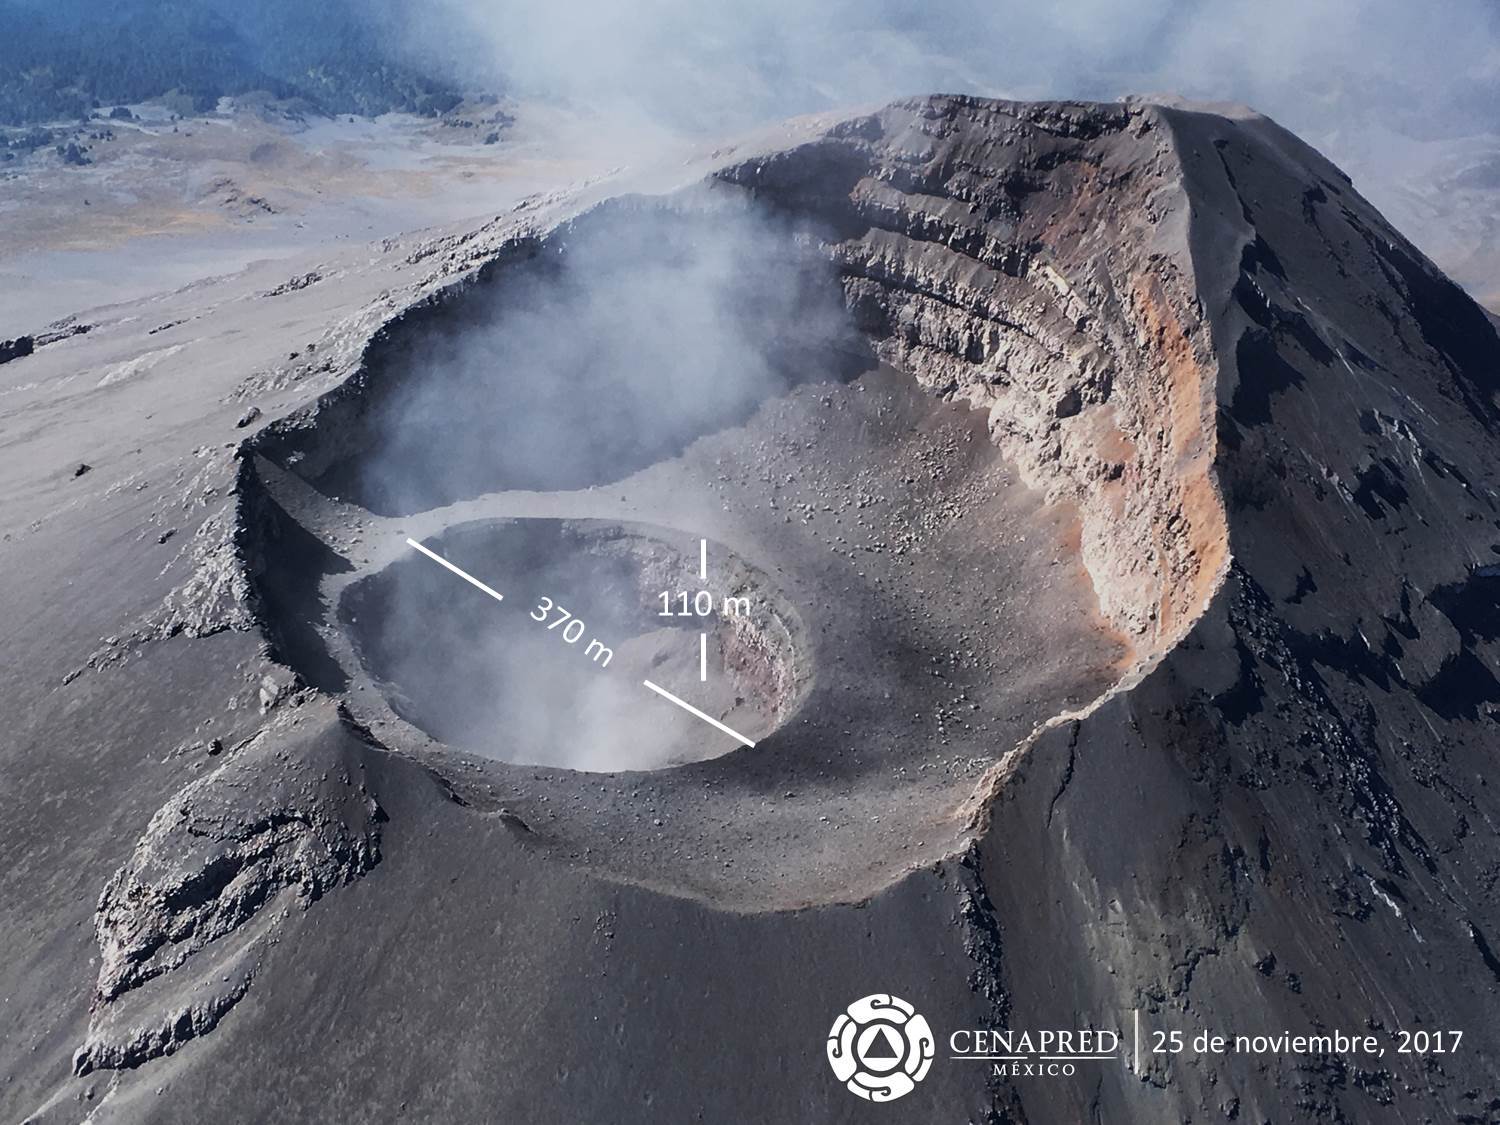 A partir de las observaciones realizadas durante este sobrevuelo, se pudo determinar que la actividad explosiva registrada en días pasados, hizo que el cráter interno aumentara sus dimensiones, alcanzando un diámetro de 370 m y una profundidad de 110 m.